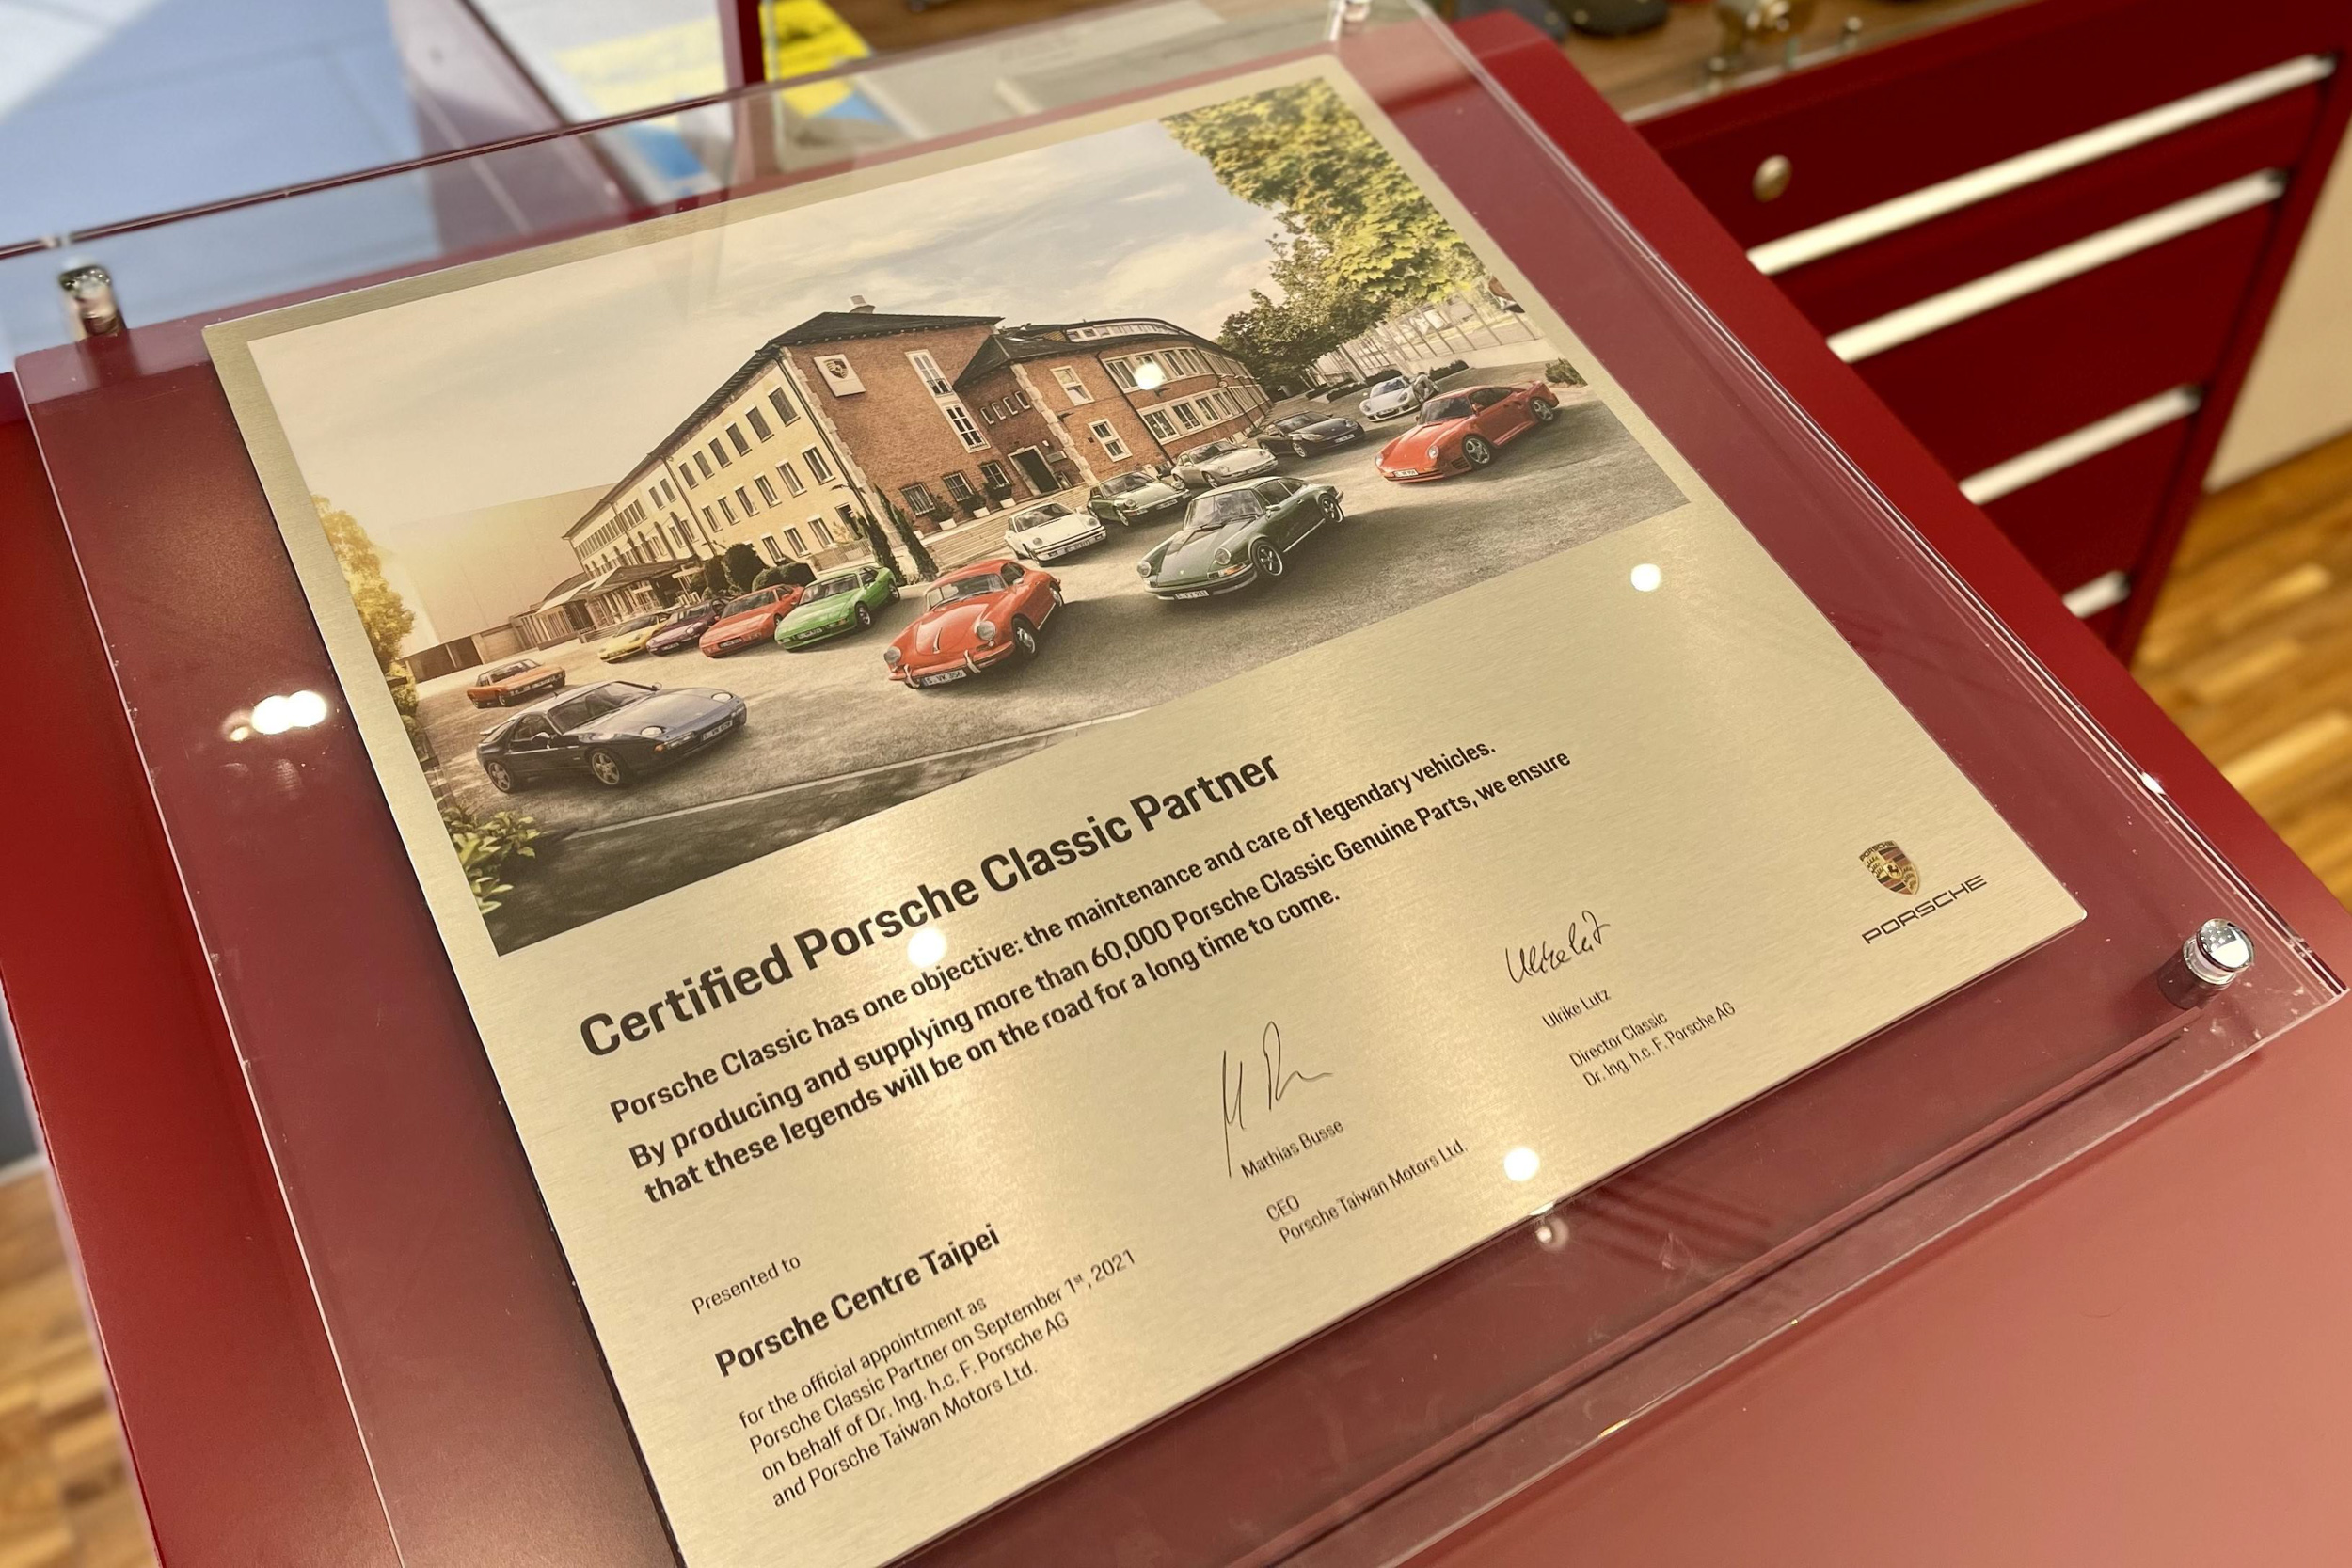 台北保時捷中心經原廠認證，成為全球最新保時捷經典車合作夥伴（Porsche Classic Partner）。